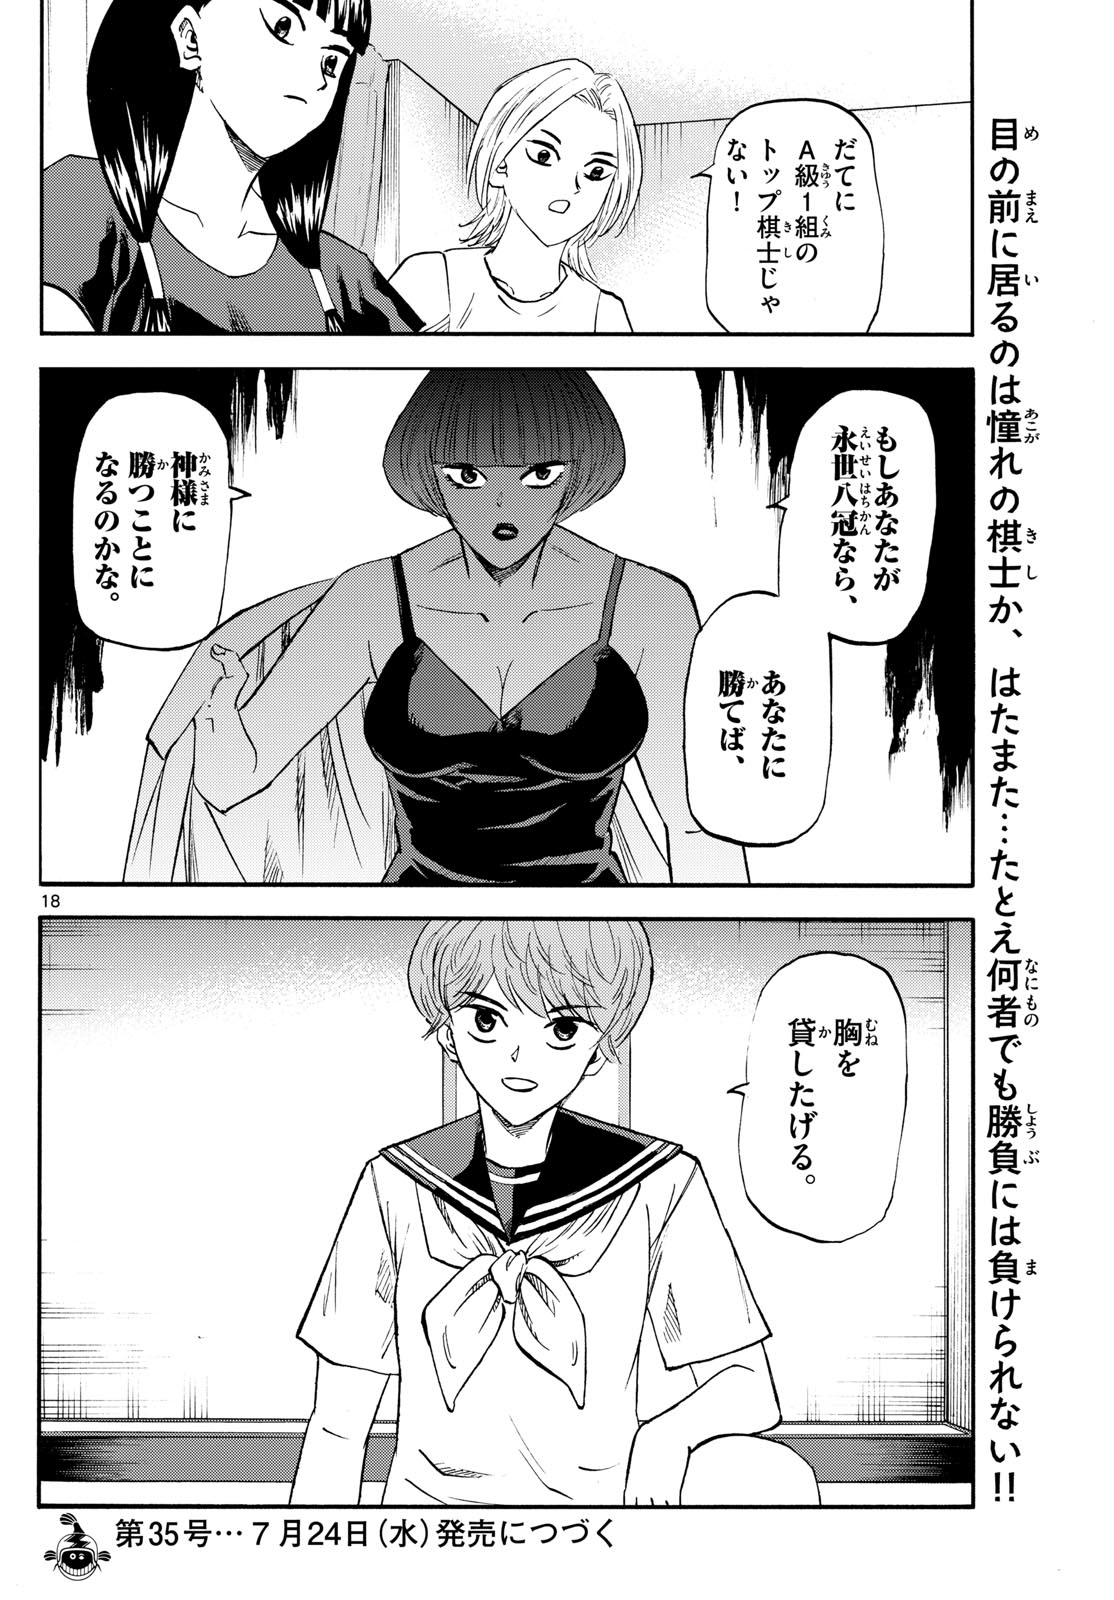 Tatsu to Ichigo - Chapter 200 - Page 18